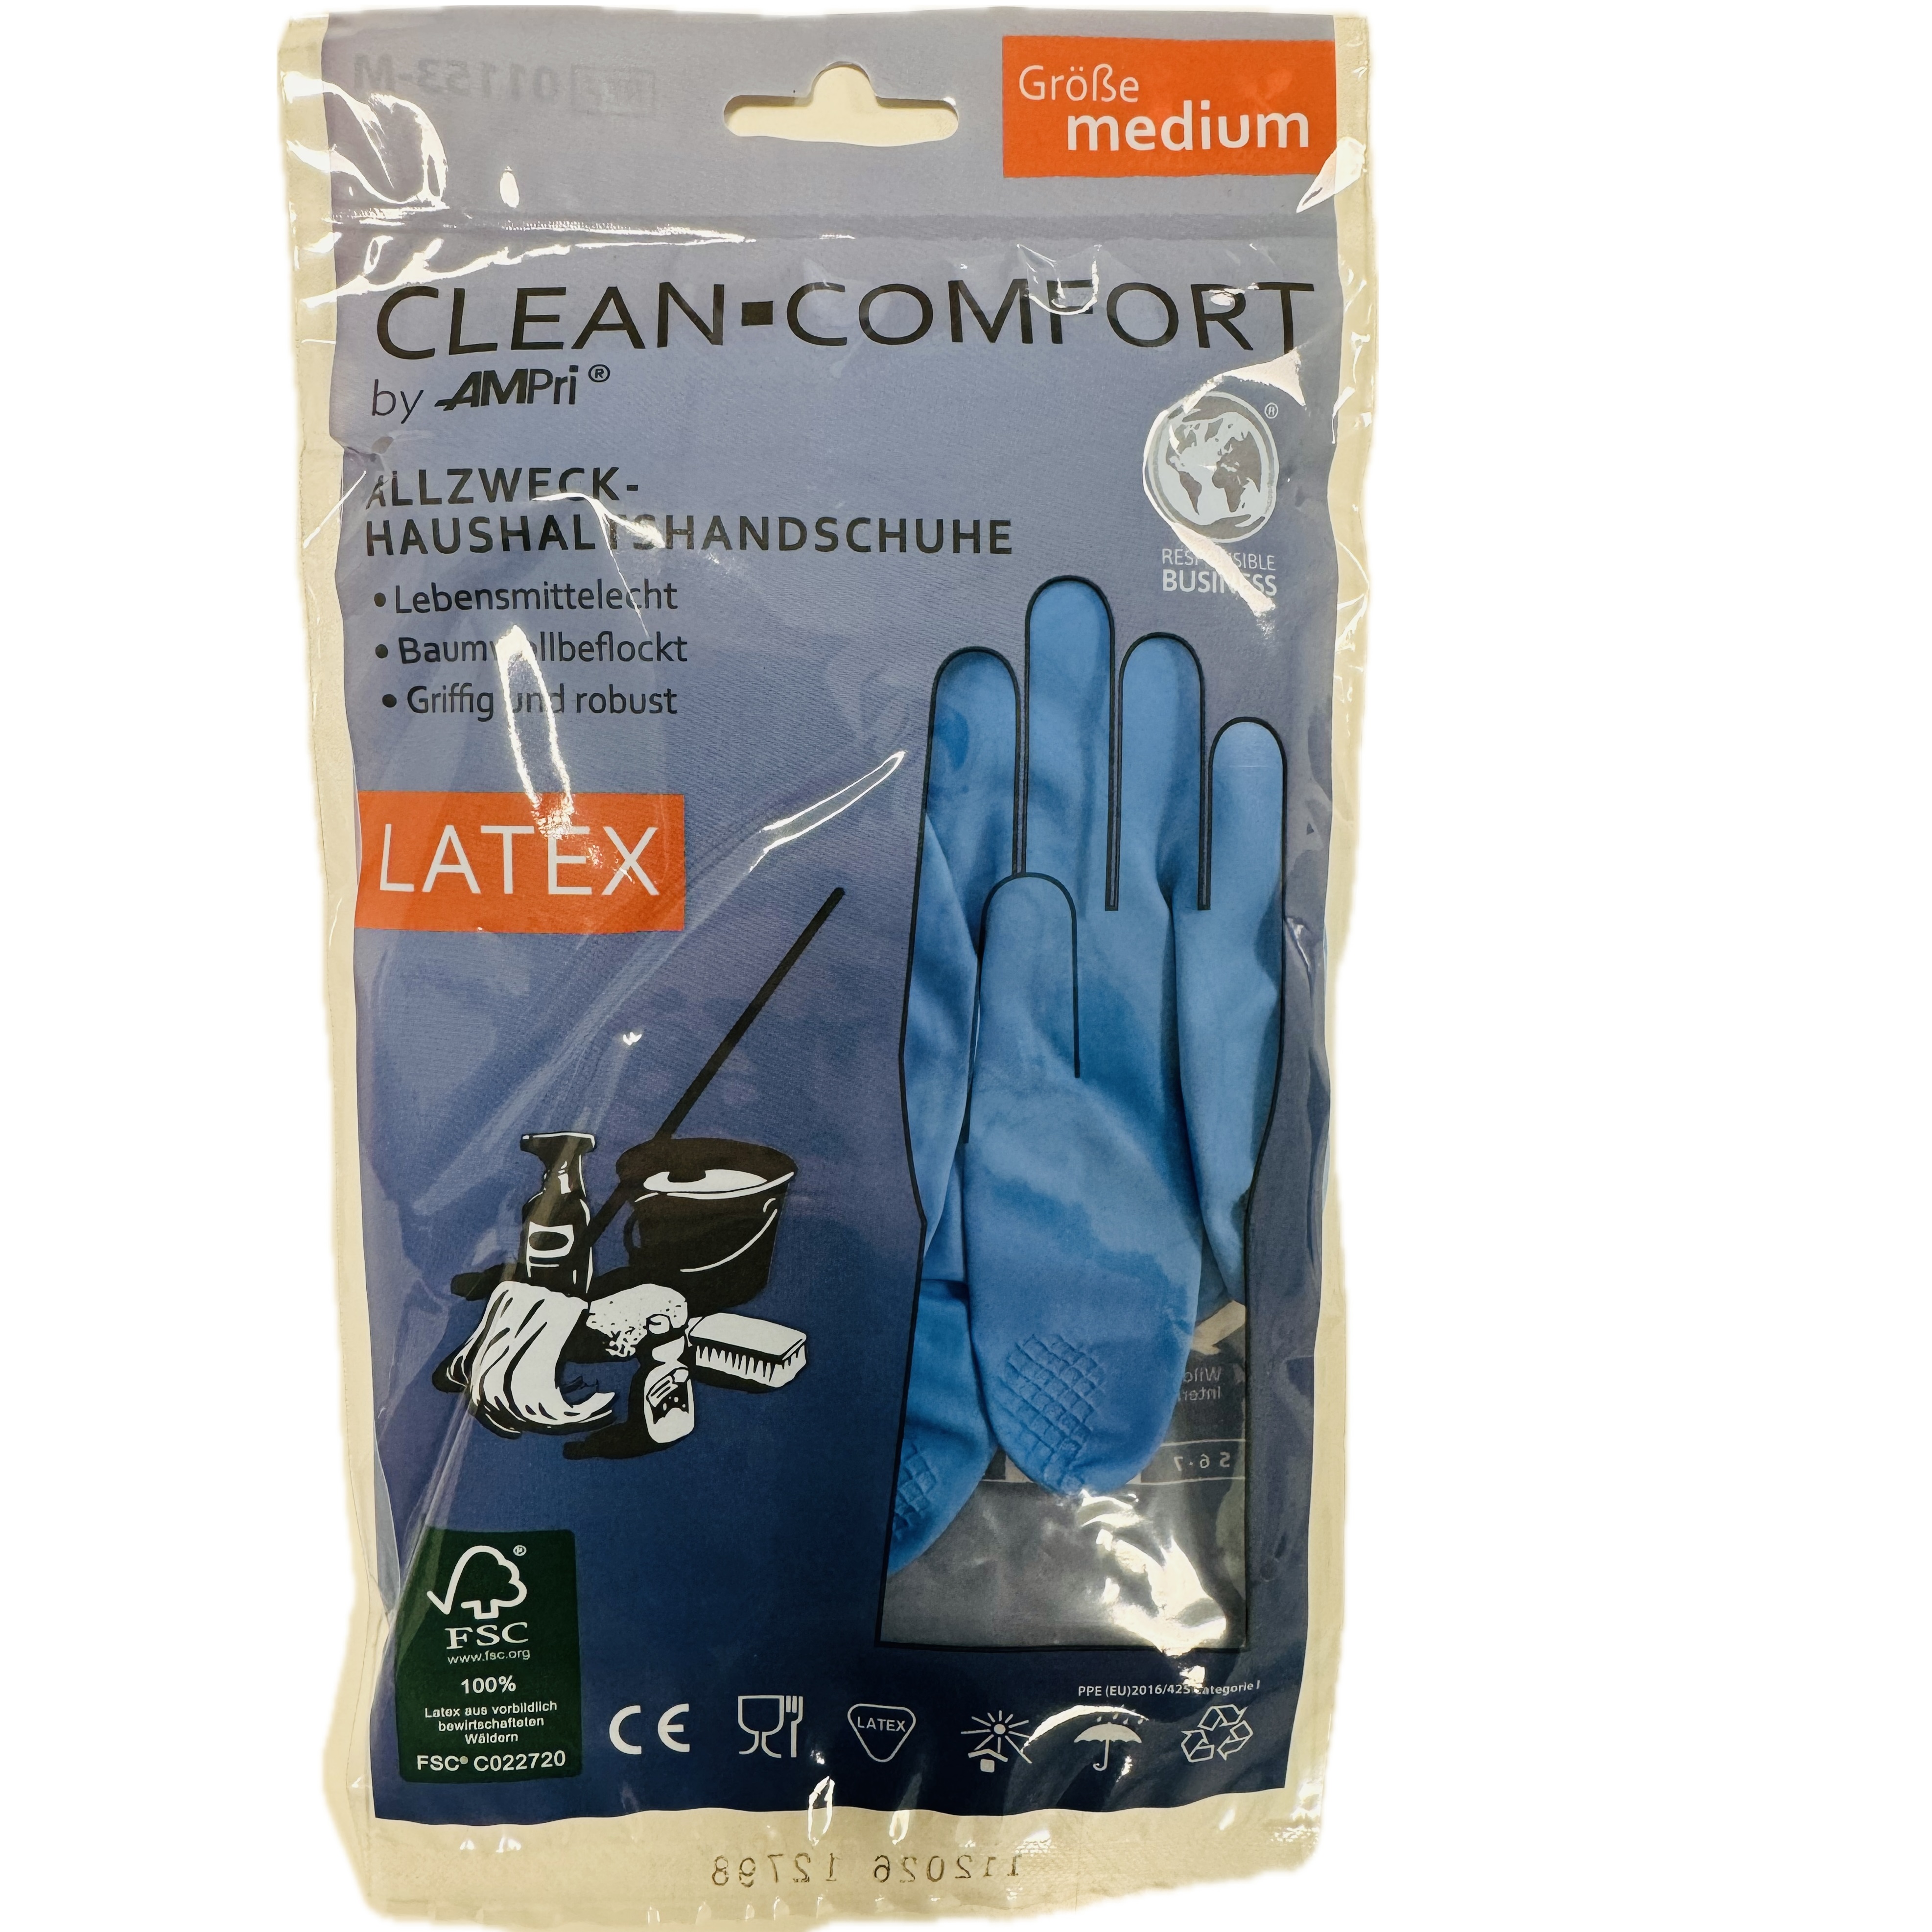 Clean-Comfort Haushaltshandschuhe Latex, blau, Gr. XL (9-10), puderfrei, baumwollbeflockt